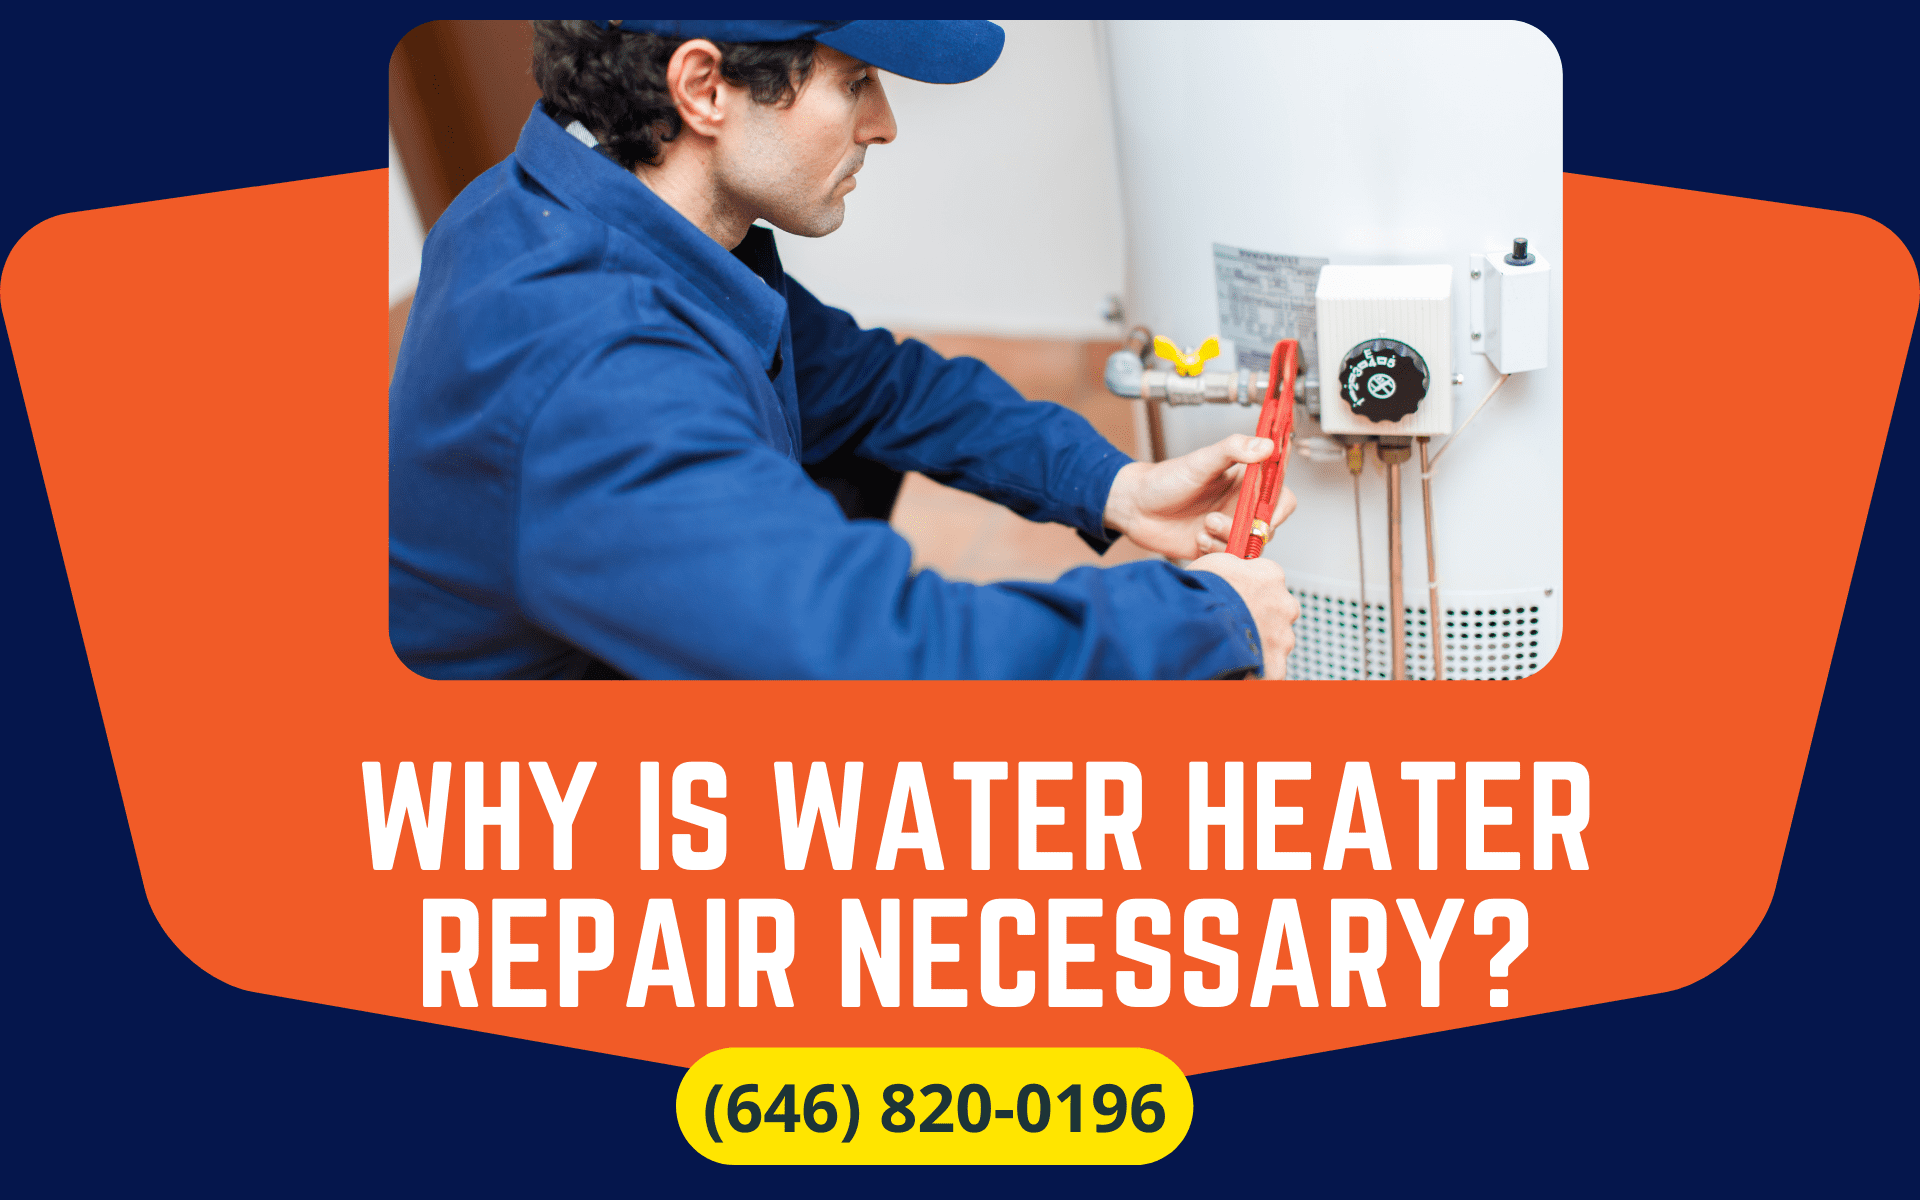 Water-Heater-Repair-Necessary